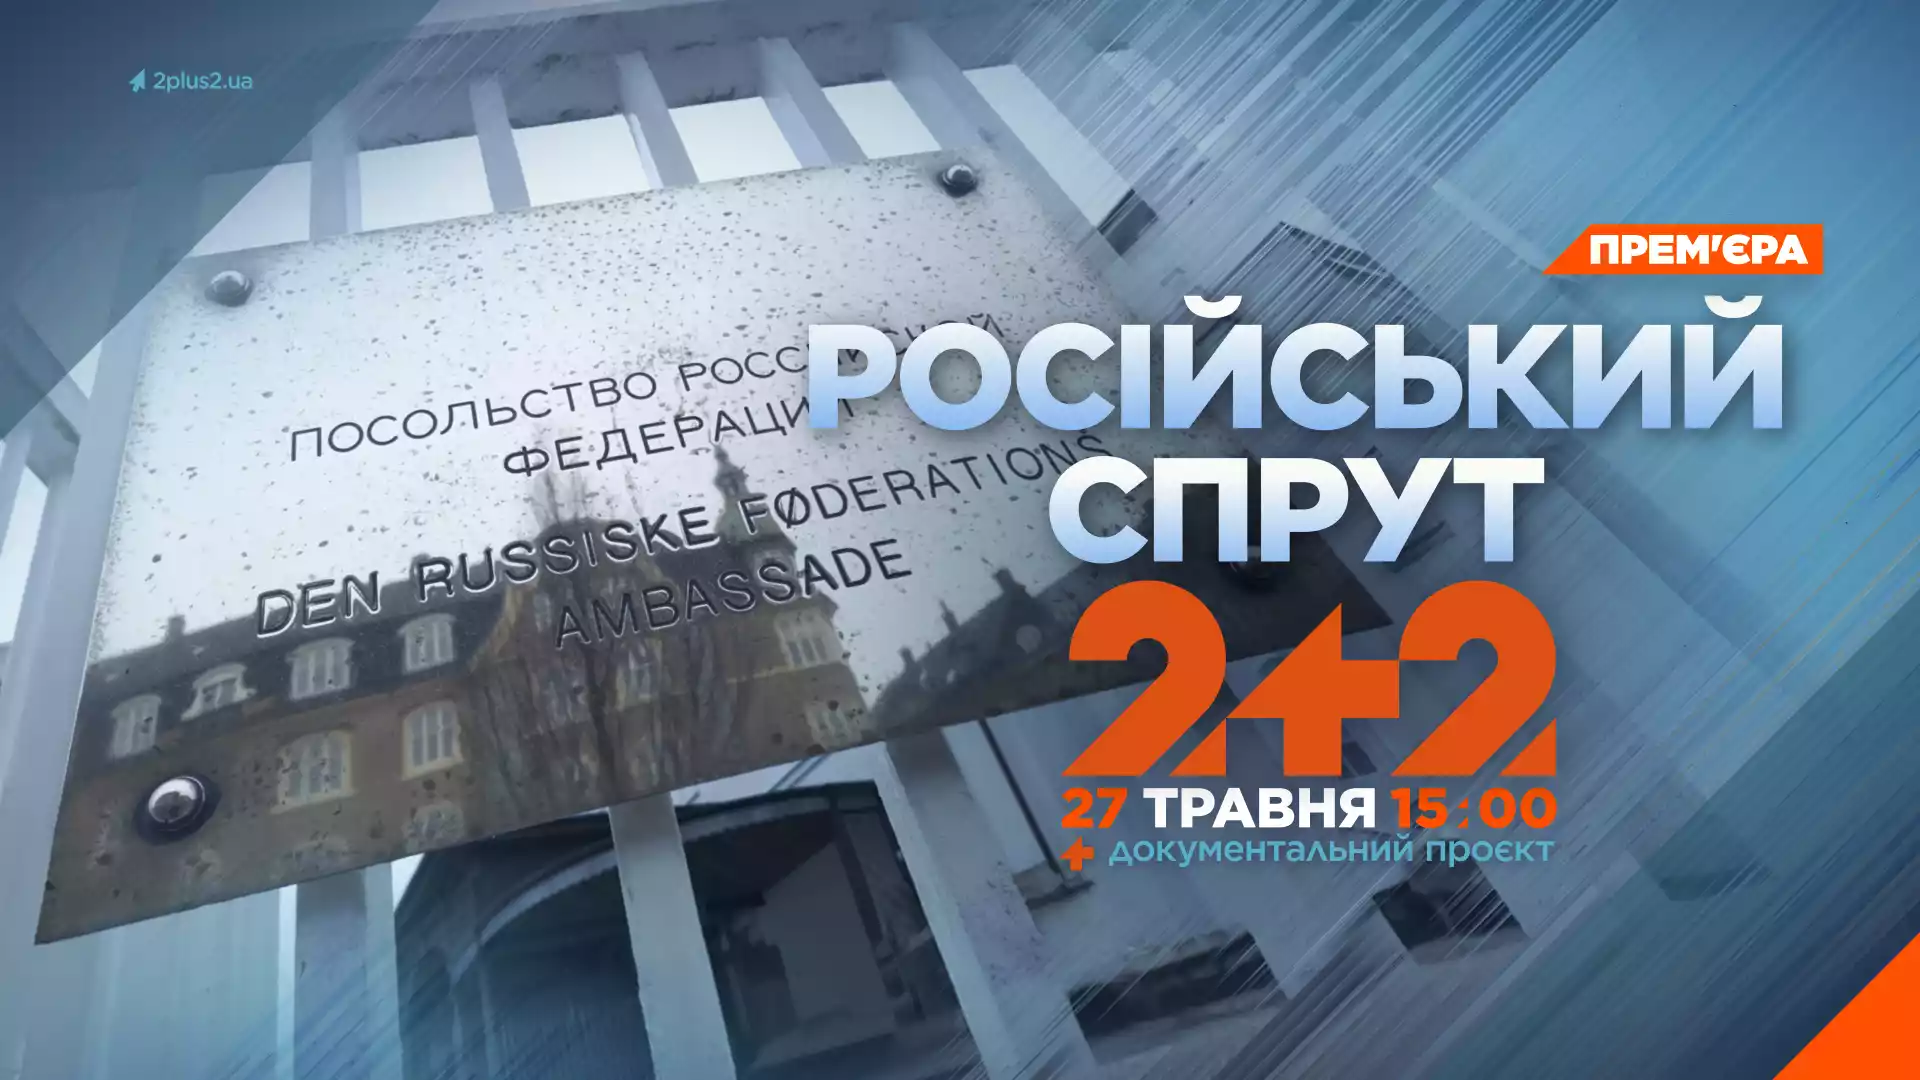 27 травня на каналі «2+2» — прем’єра документального проєкту «Російський спрут. Як кремль впливає на світ»